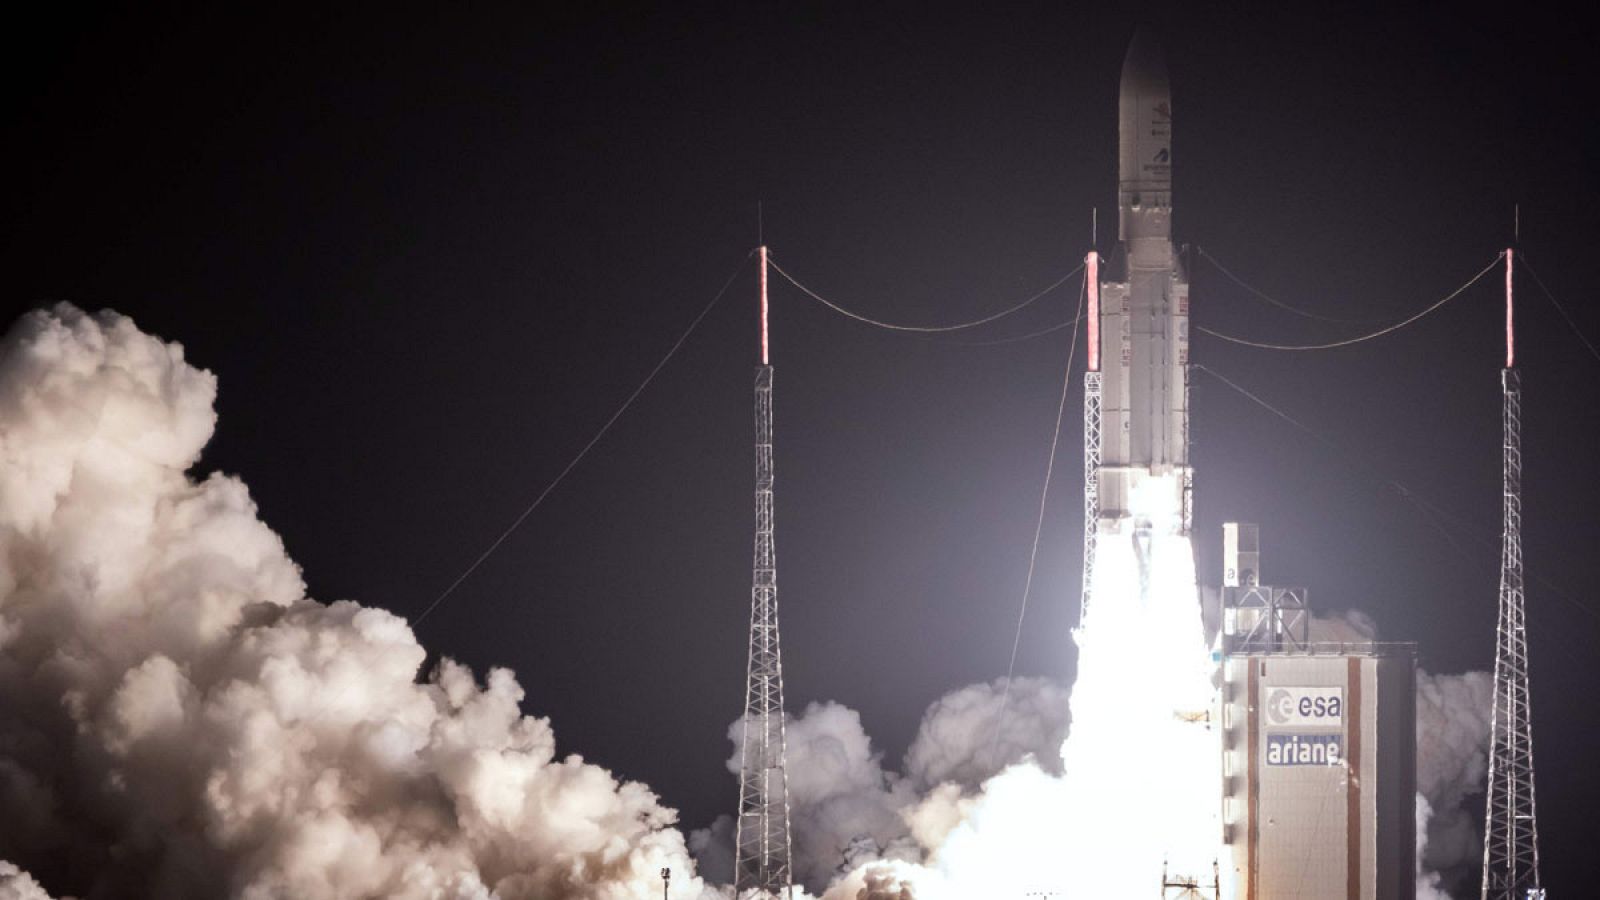 Imagen del lanzamiento del cohete Ariane 5 , a bordo del cual va BepiColombo, la primera misión espacial europea a Mercurio.